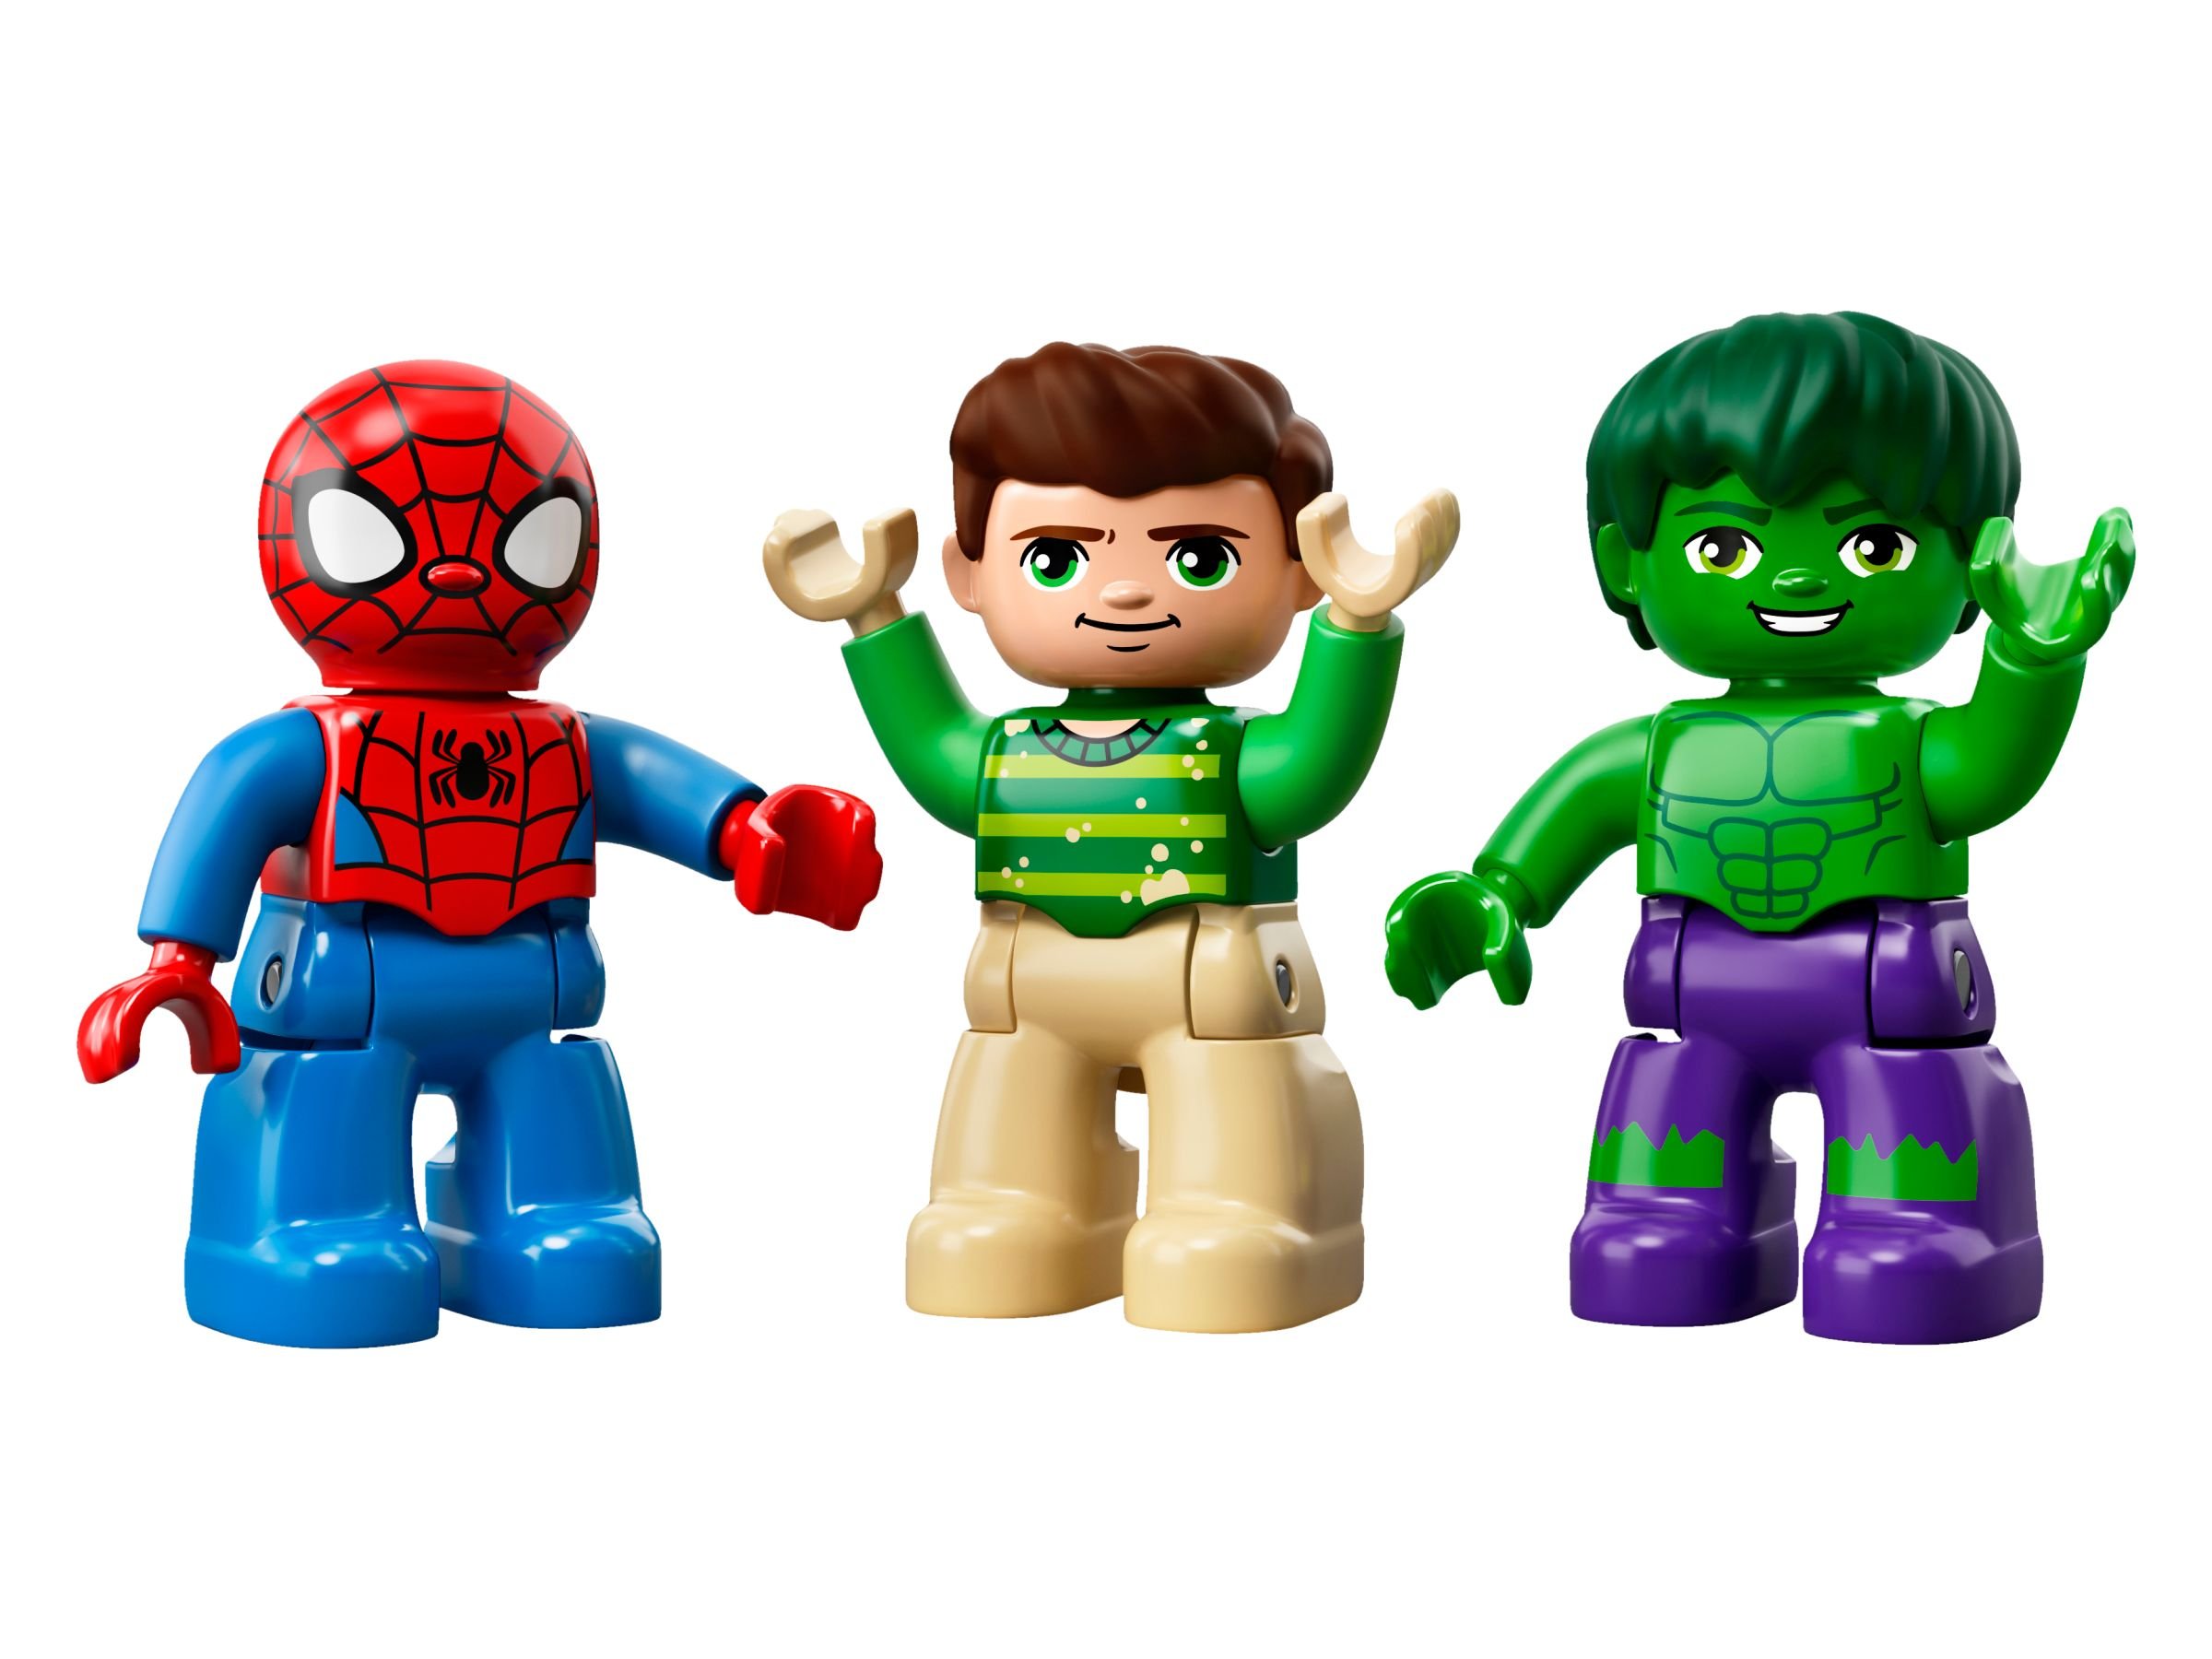 LEGO Duplo 10876 Die Abenteuer von Spider-Man und Hulk LEGO_10876_alt6.jpg